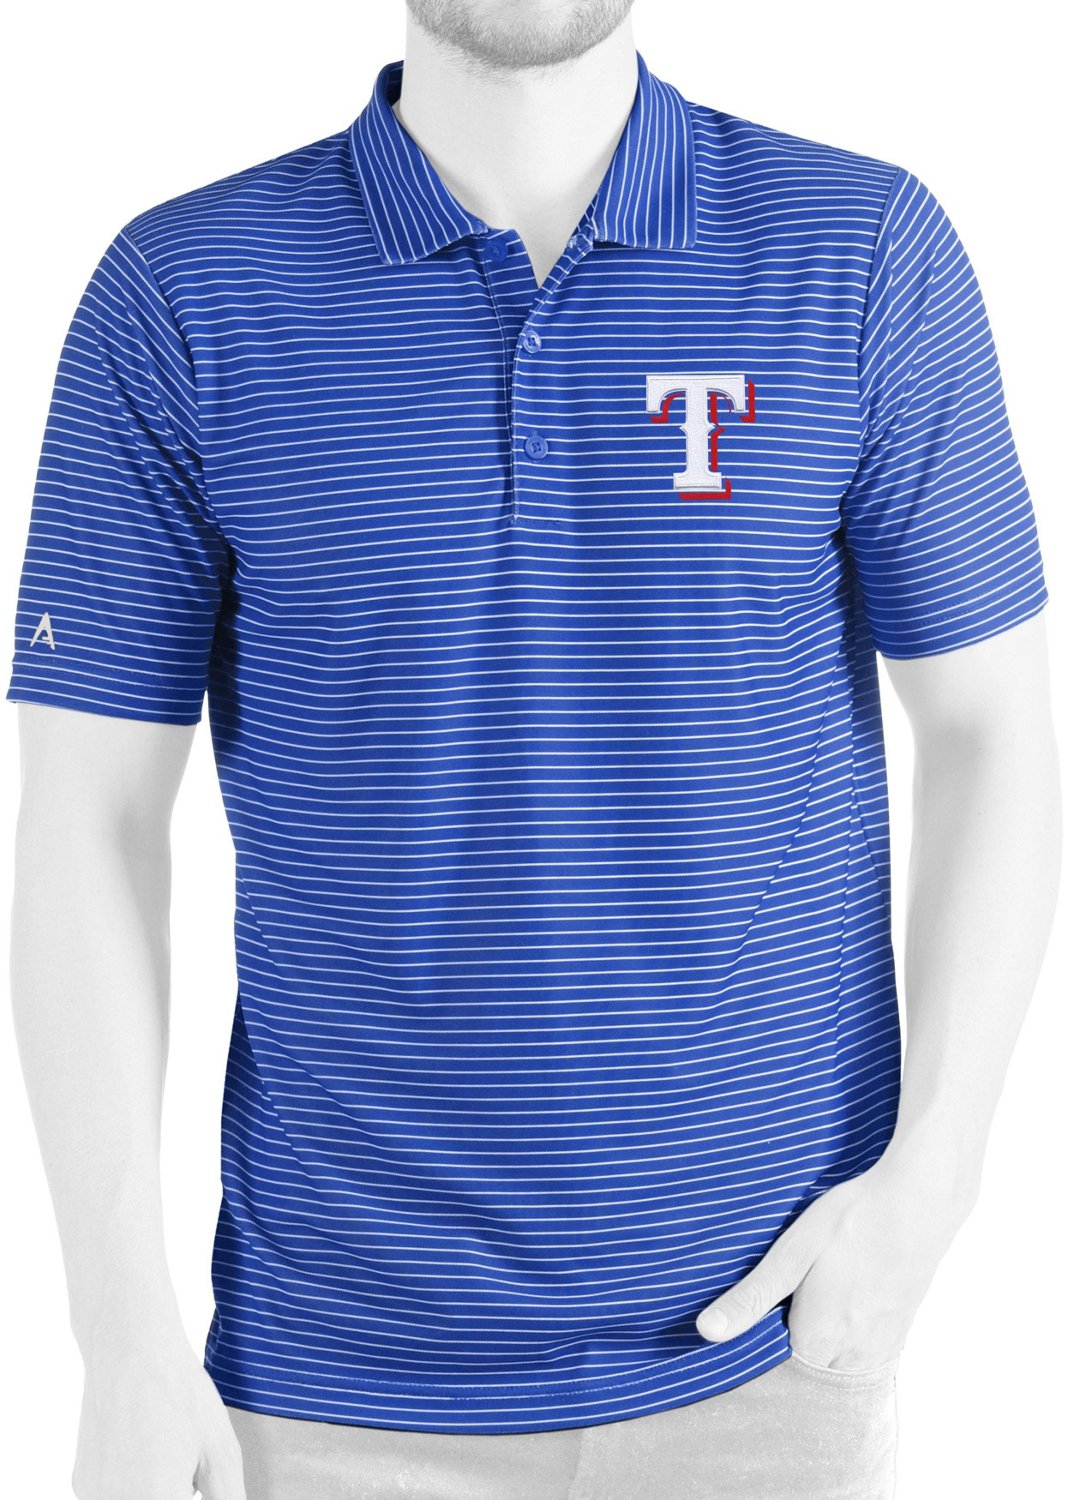 Antigua Men's Texas Rangers Esteem Polo Shirt